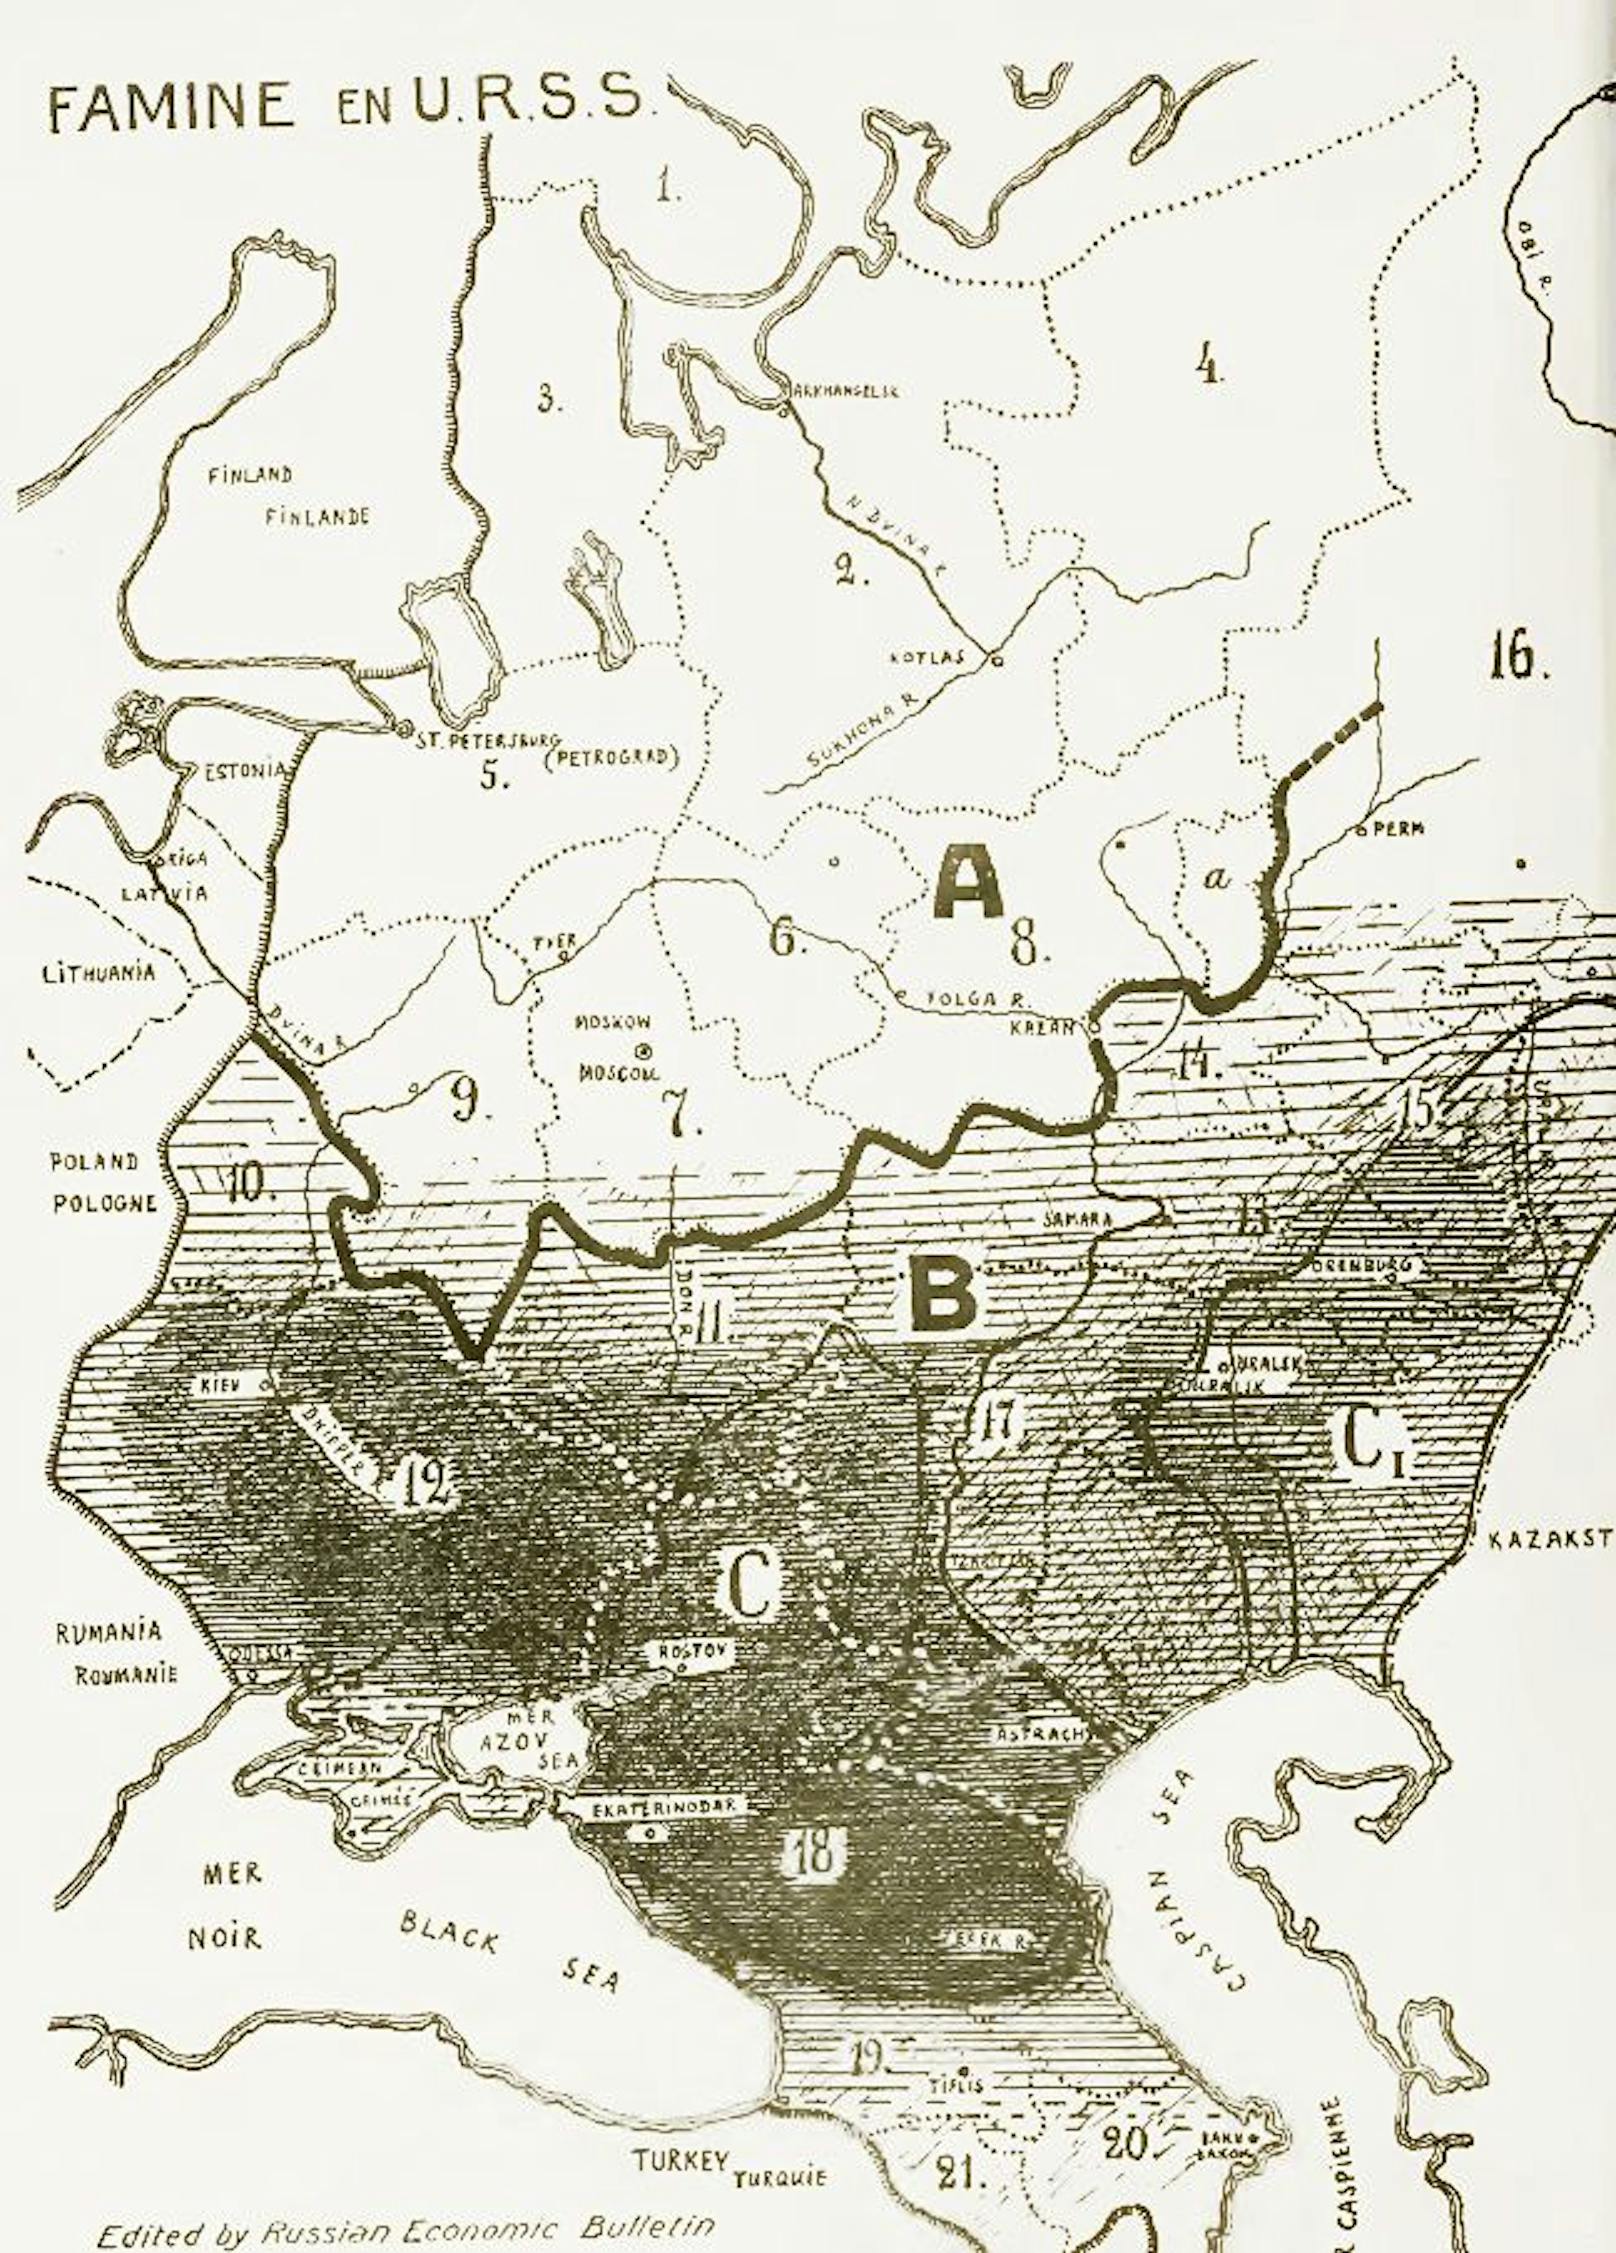 <strong>Zeitgenössische Darstellung der großen Hungersnot 1933</strong>. Wo Getreide angebaut wurde (B), wurde es von den Sowjets beschlagnahmt und in Zone A konsumiert (Moskau und St. Petersburg). Je dunkler die markierte Fläche, desto schlimmer war die Hungersnot hier. Darunter auch die Ukraine (12).